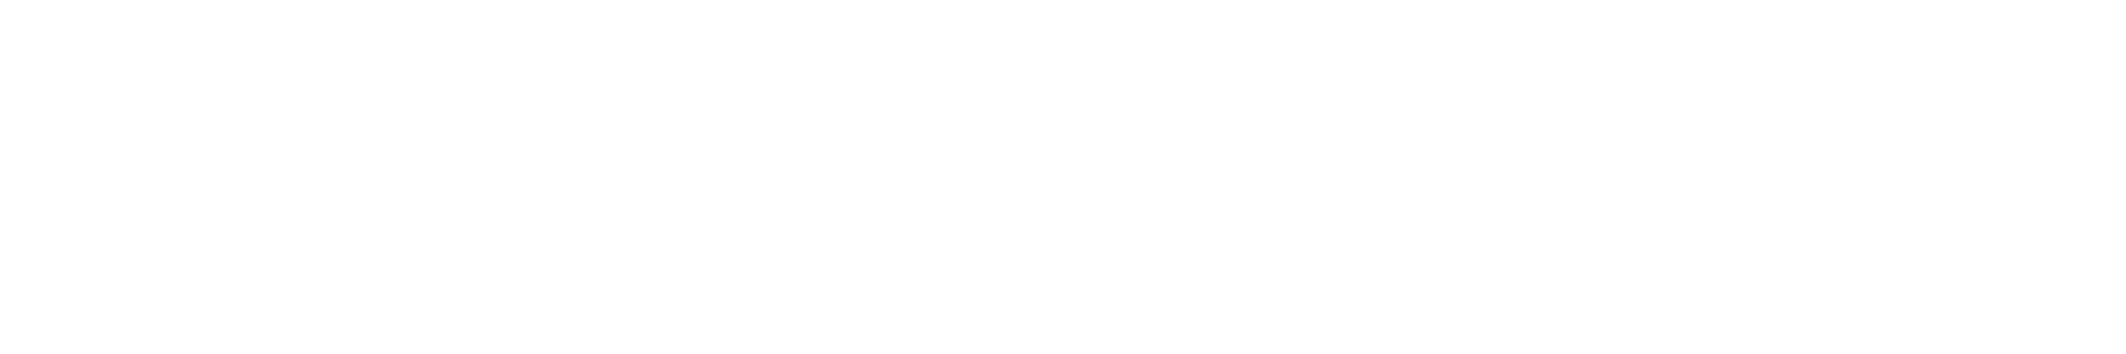 ReachMoreParents logo_Final_WO